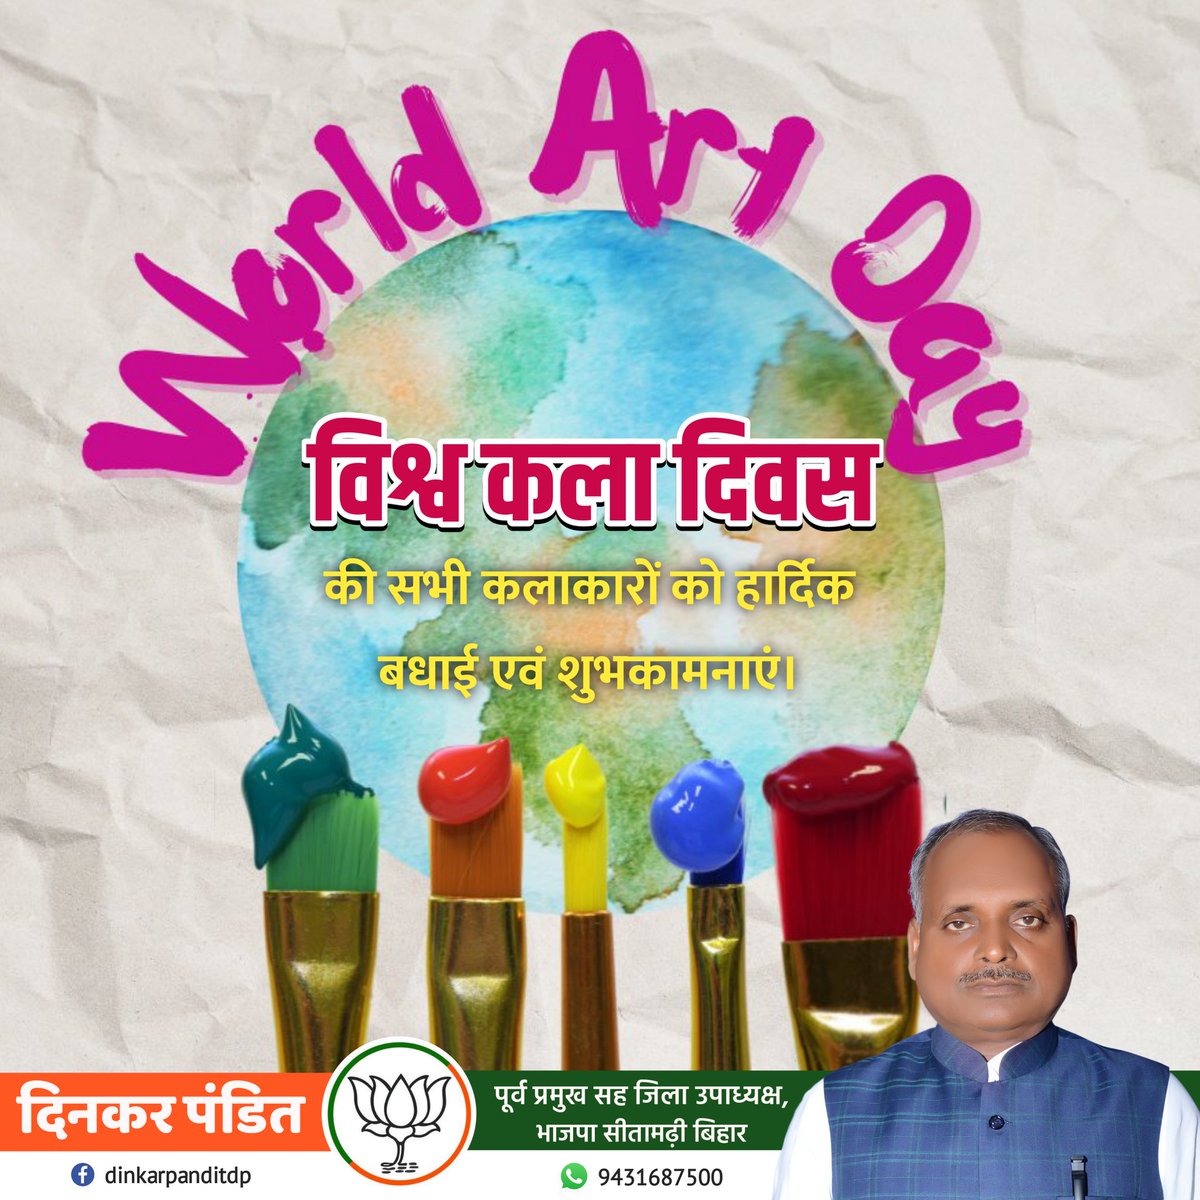 सभी कला प्रेमियों को विश्व कला दिवस की हार्दिक शुभकामनाएं एवं बधाई । आपका जीवन खुशियों के रंग से हमेशा भरा रहे। 
#कला_दिवस #WorldArtDay